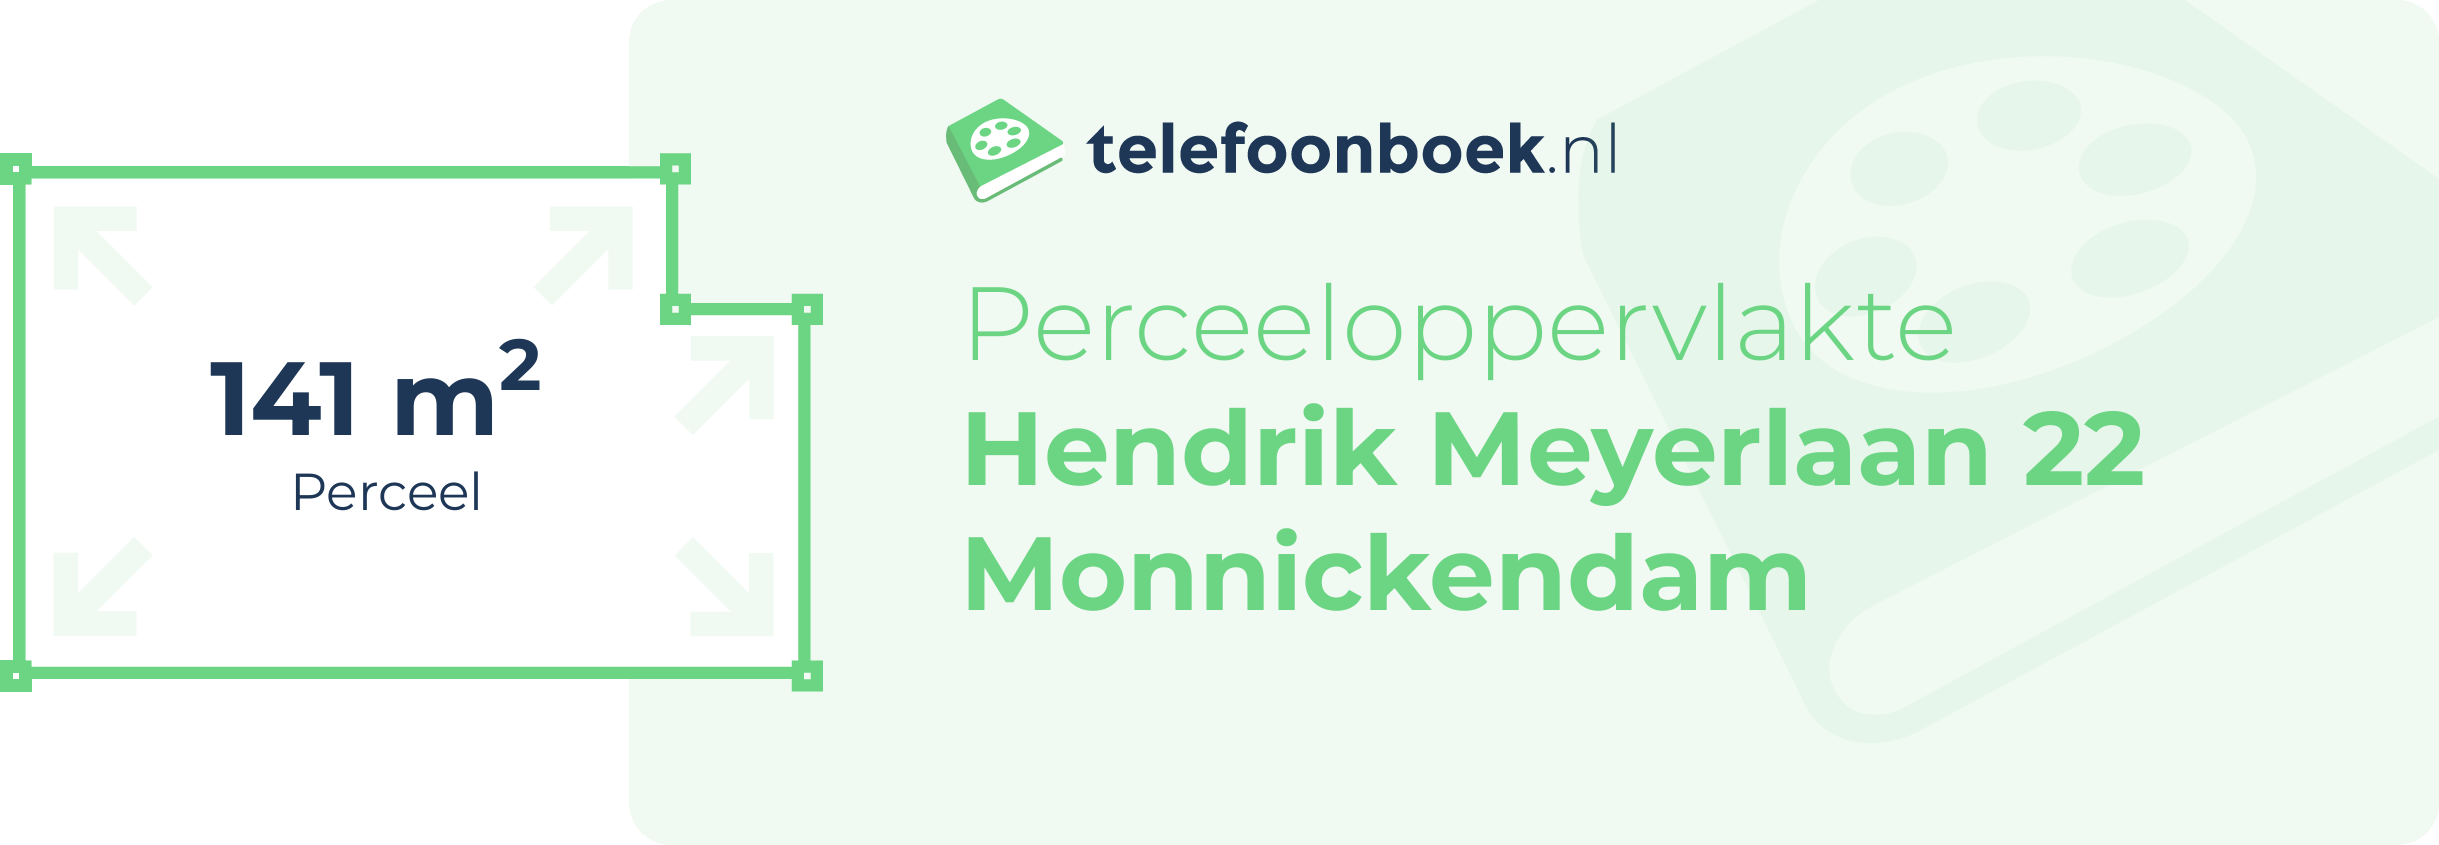 Perceeloppervlakte Hendrik Meyerlaan 22 Monnickendam